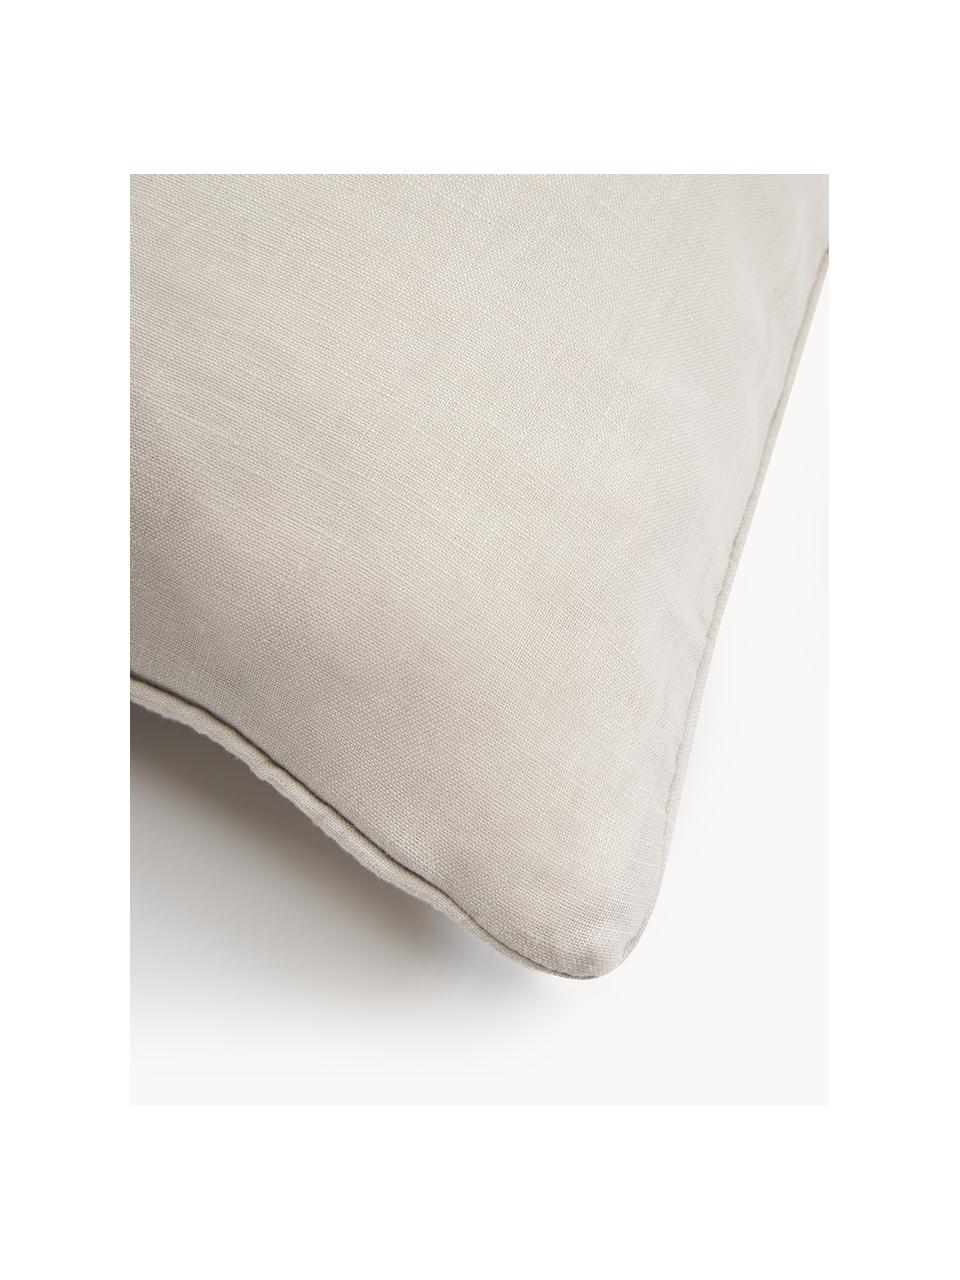 Housse de coussin en tissu bouclé avec bordure passepoilée Aya, Blanc crème, larg. 45 x long. 45 cm